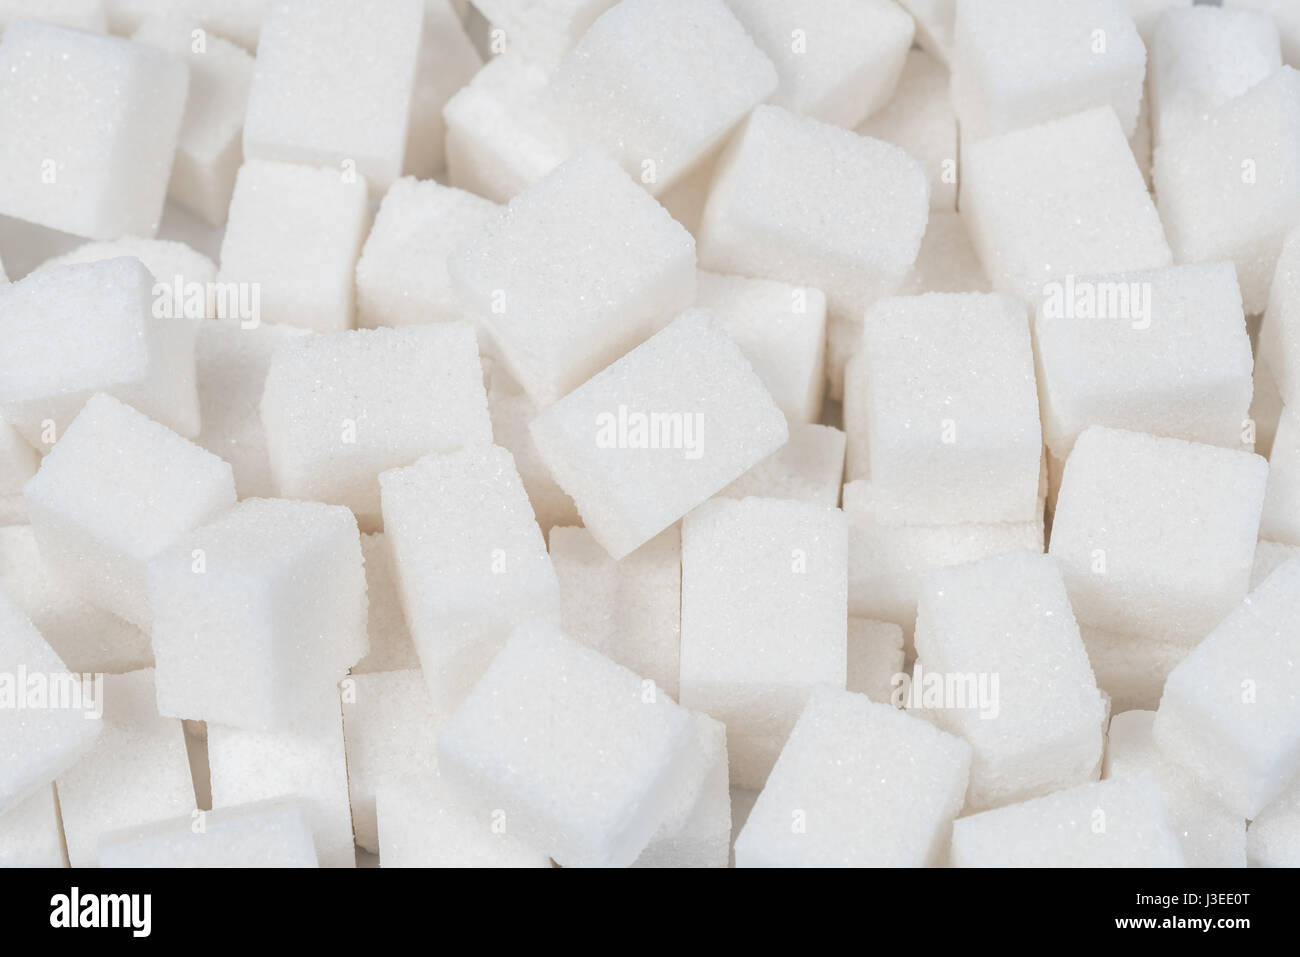 Sfondo di zucchero dolce ingrediente alimentare con una chiusura di una pila di deliziosi grumi bianchi di cubetti come un simbolo della cucina e panificazione e la dieta dei rischi per la salute legati al diabete e assunzione di calorie. Foto Stock